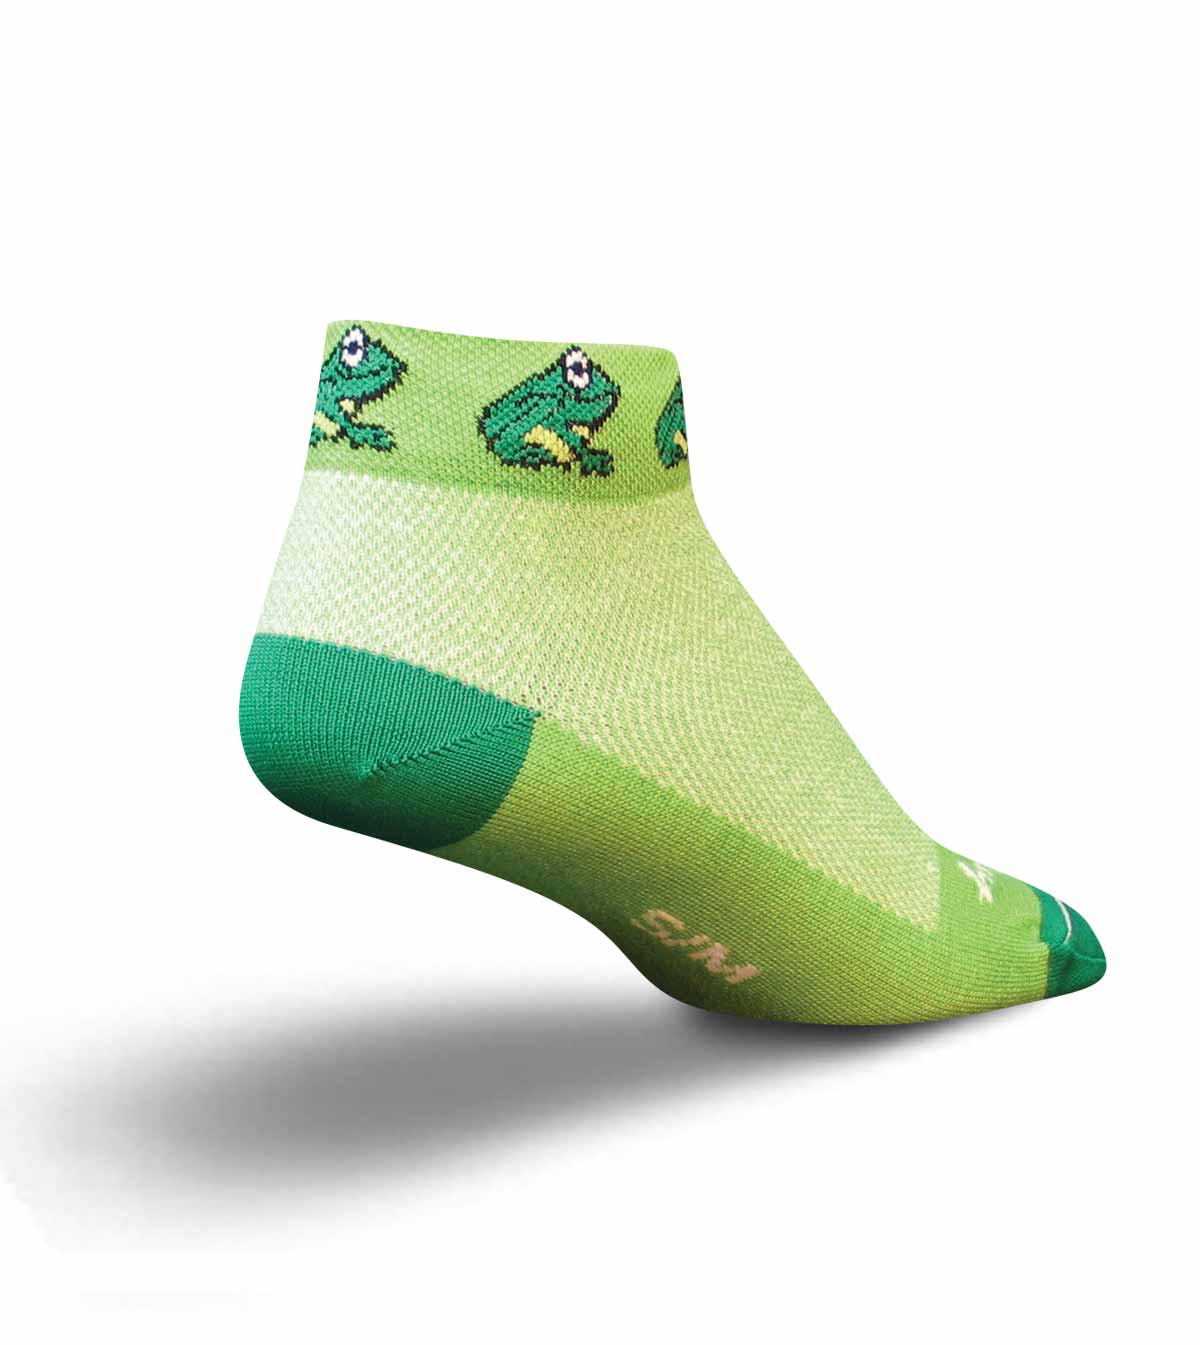 Froggie Details about   Sockguy 1" Socks 